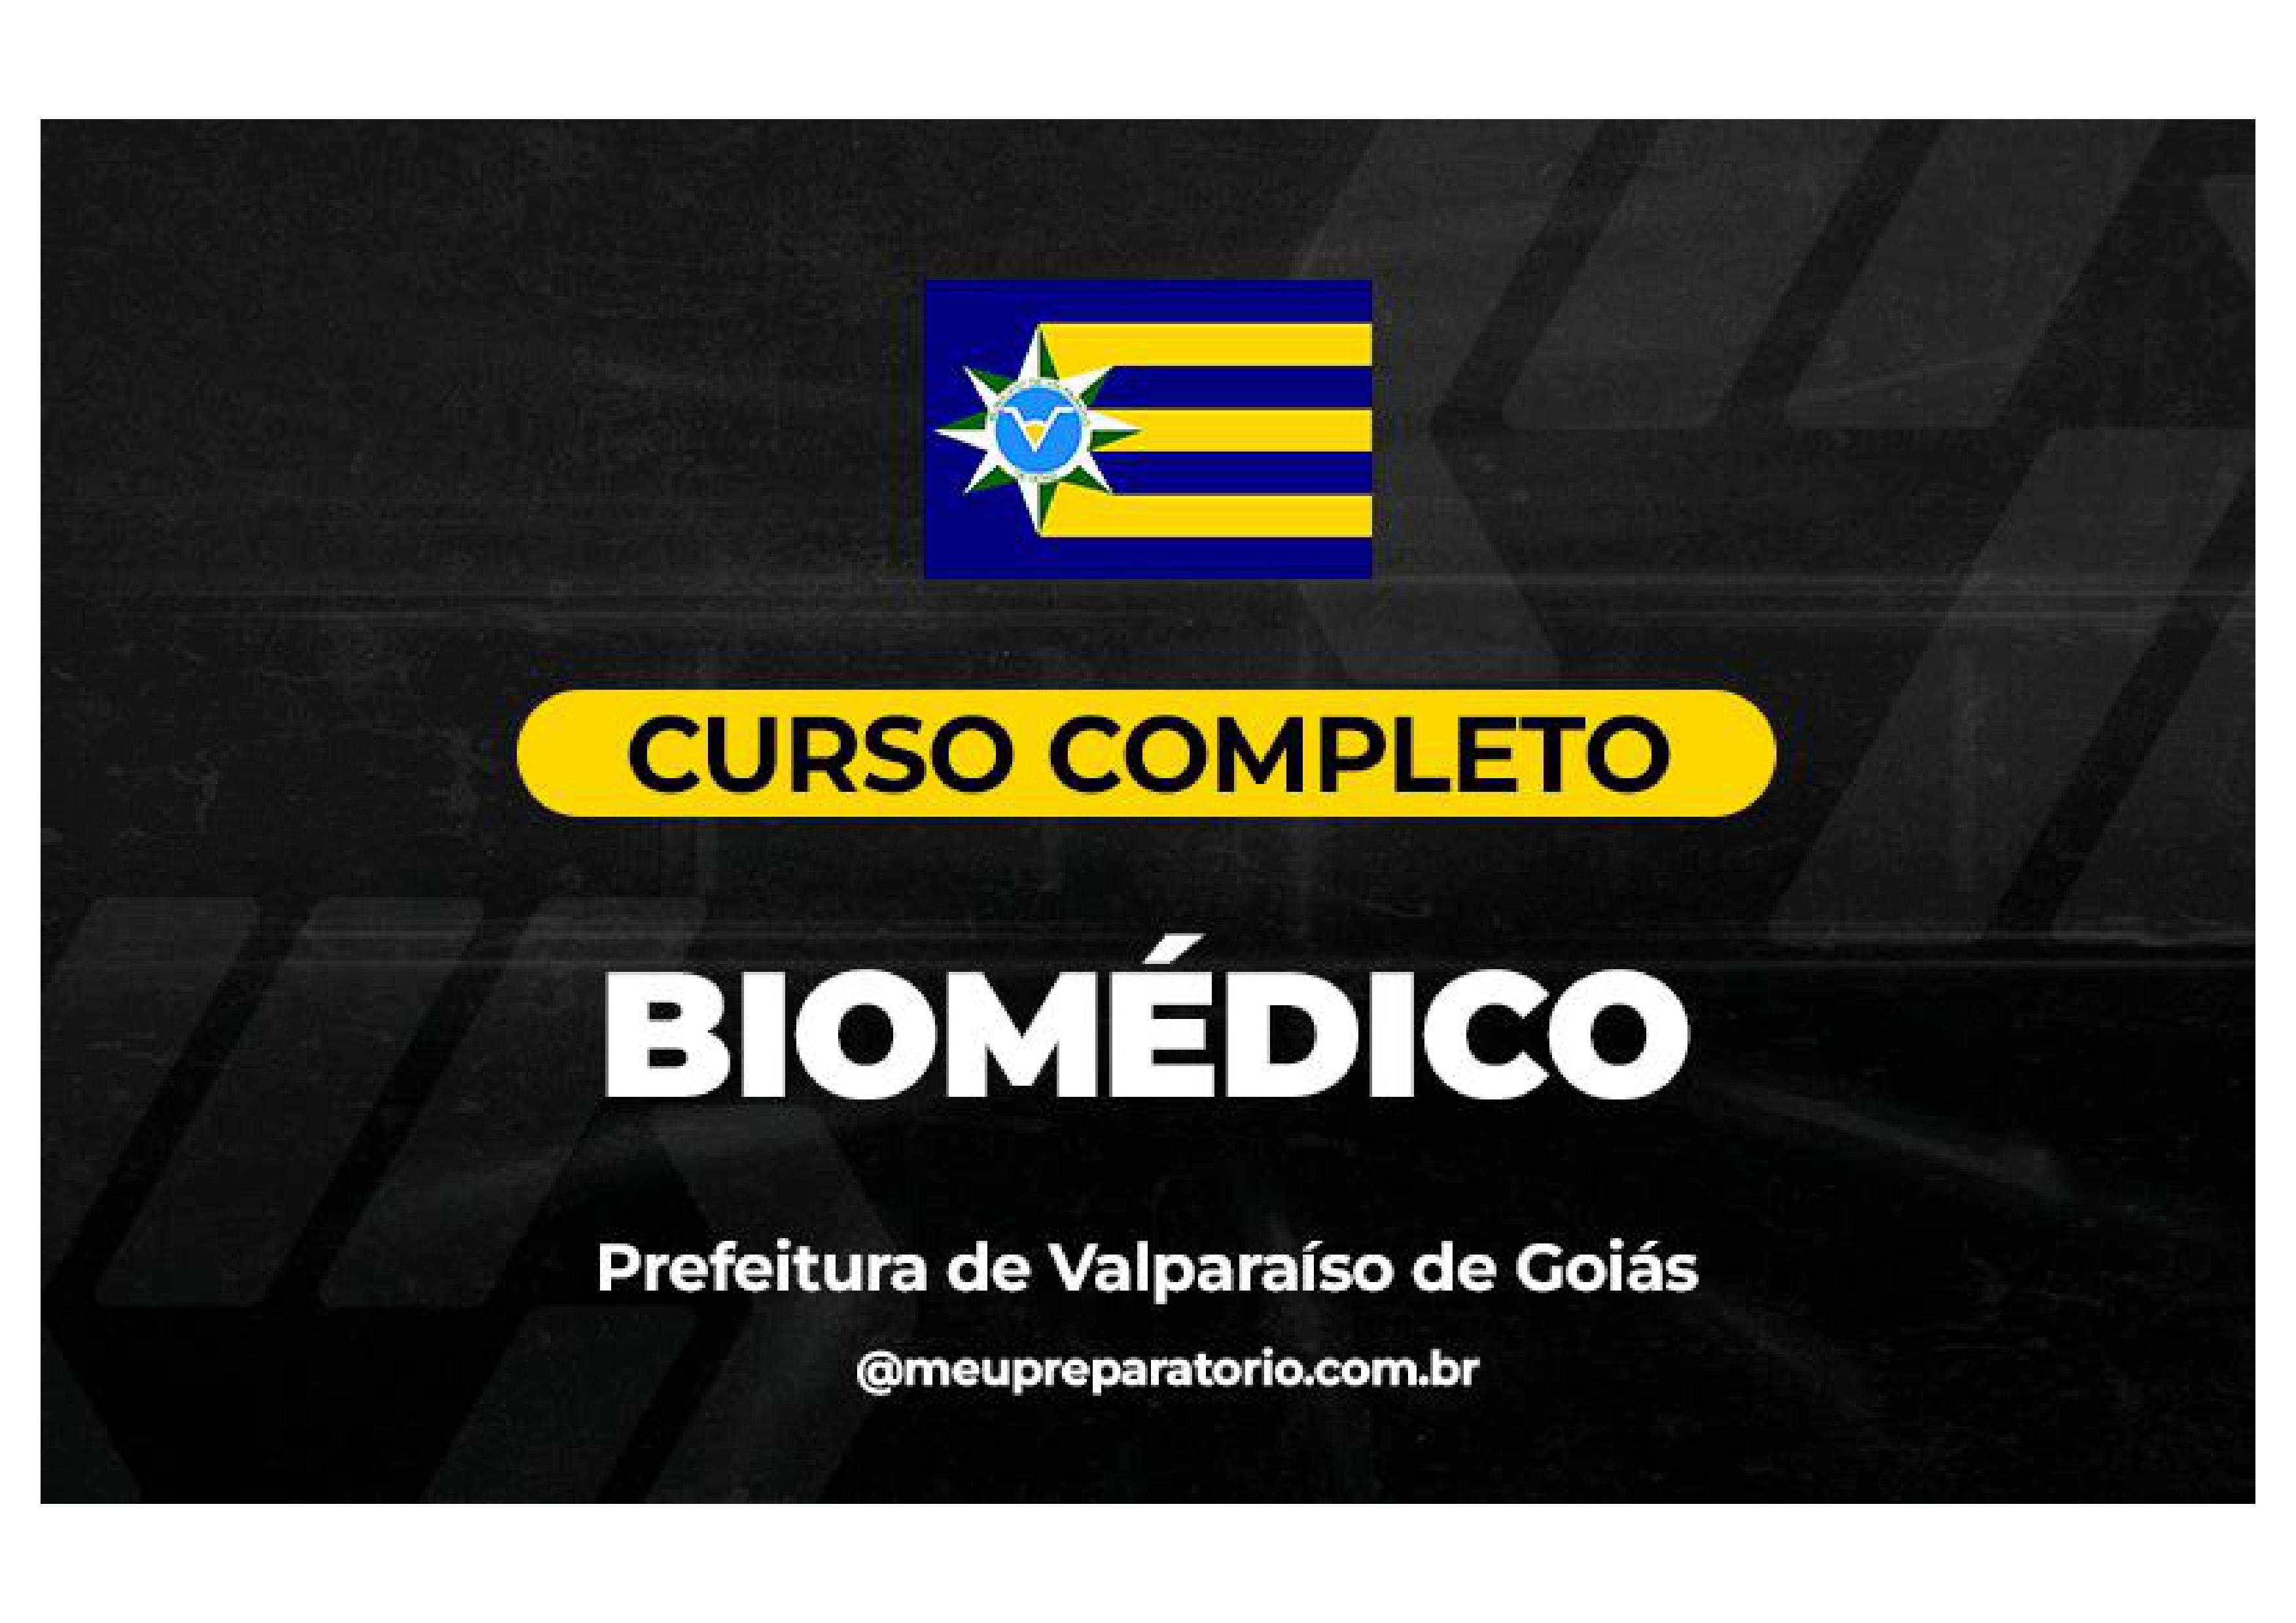 Biomédico - Valparaíso (GO)